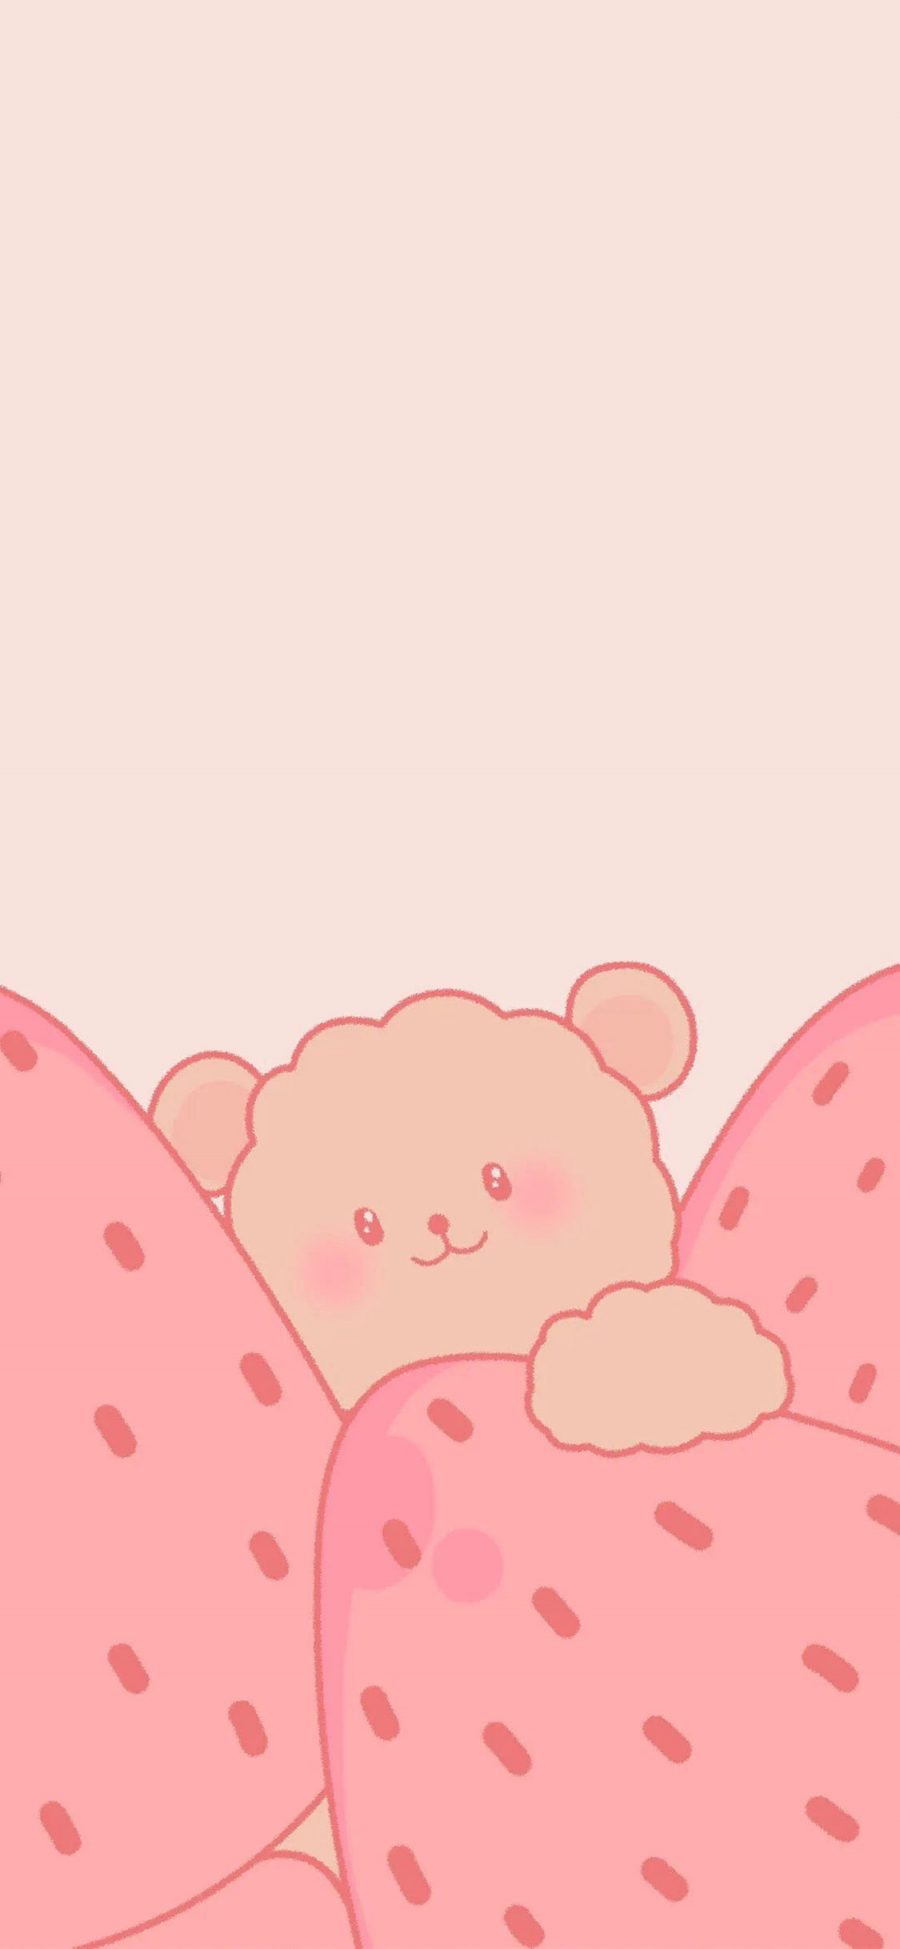 [2436×1125]粉色系 草莓 小熊 可爱 苹果手机动漫壁纸图片